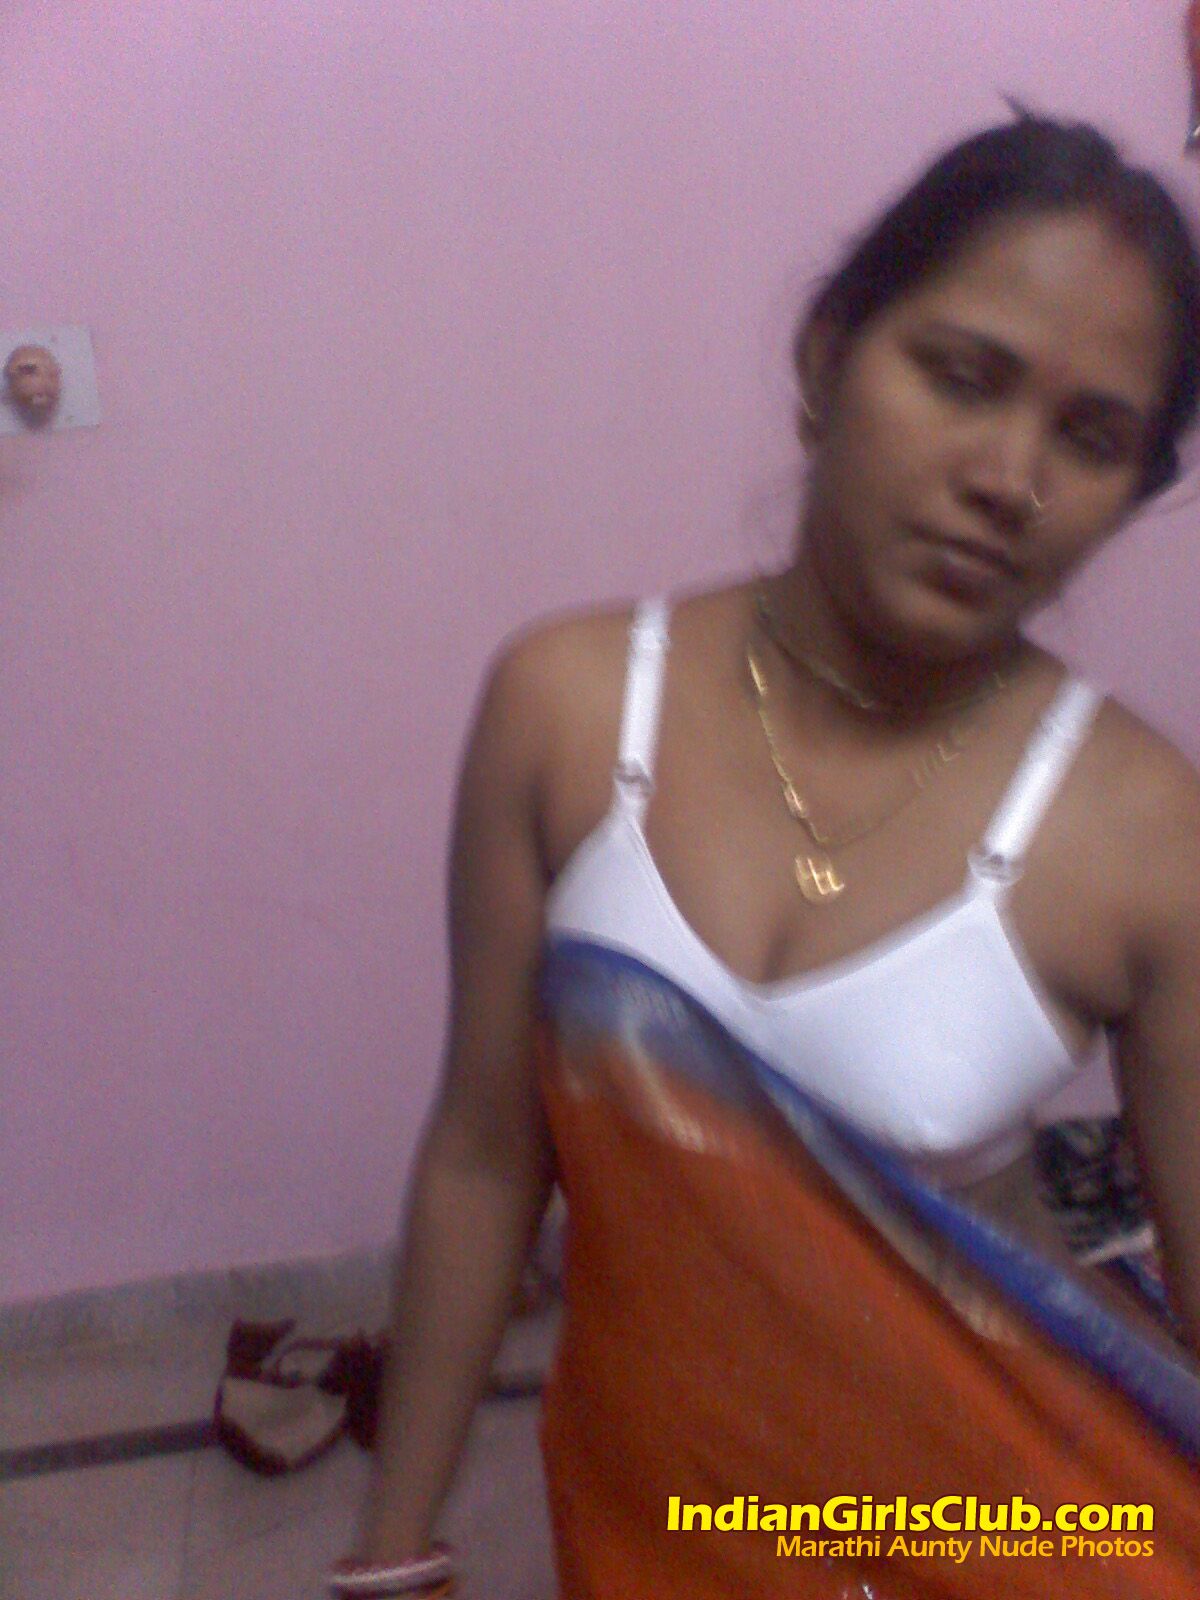 Tin M. reccomend marathi teen naked photos